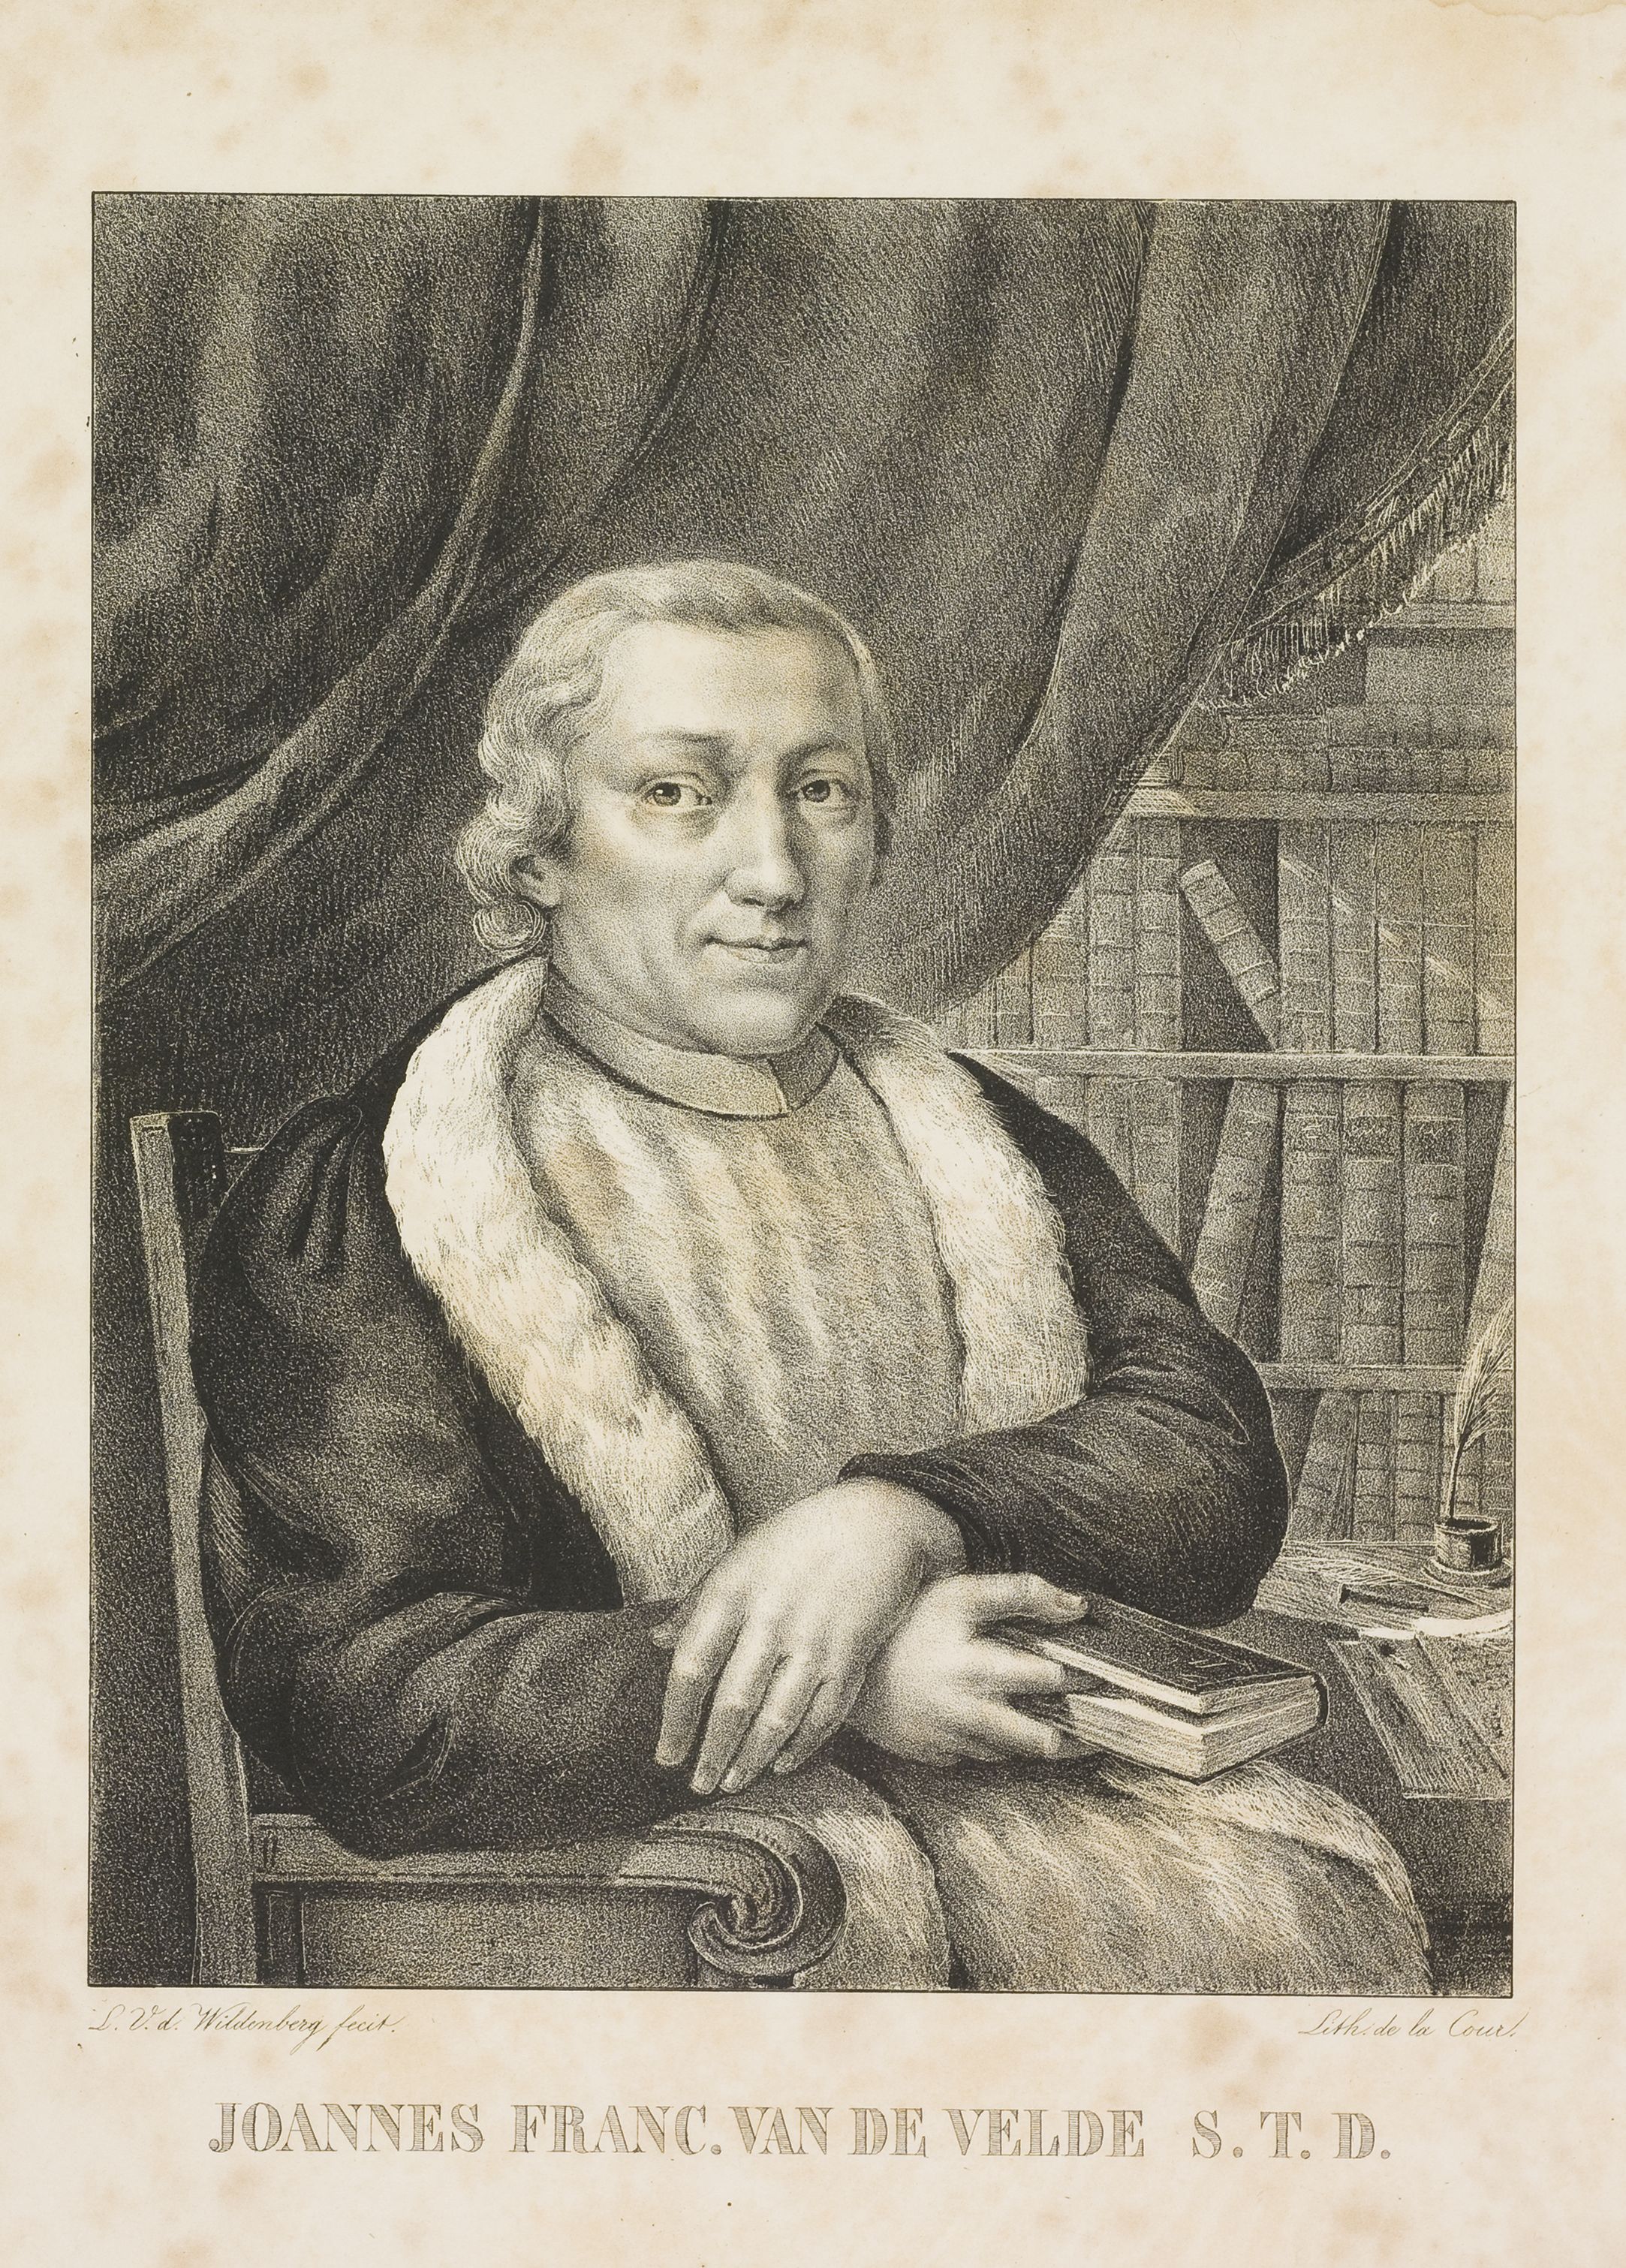 Ooggetuige van een
woelig tijdperk.
Eximius
van de Velde (1743-1823) en zijn briefwisseling